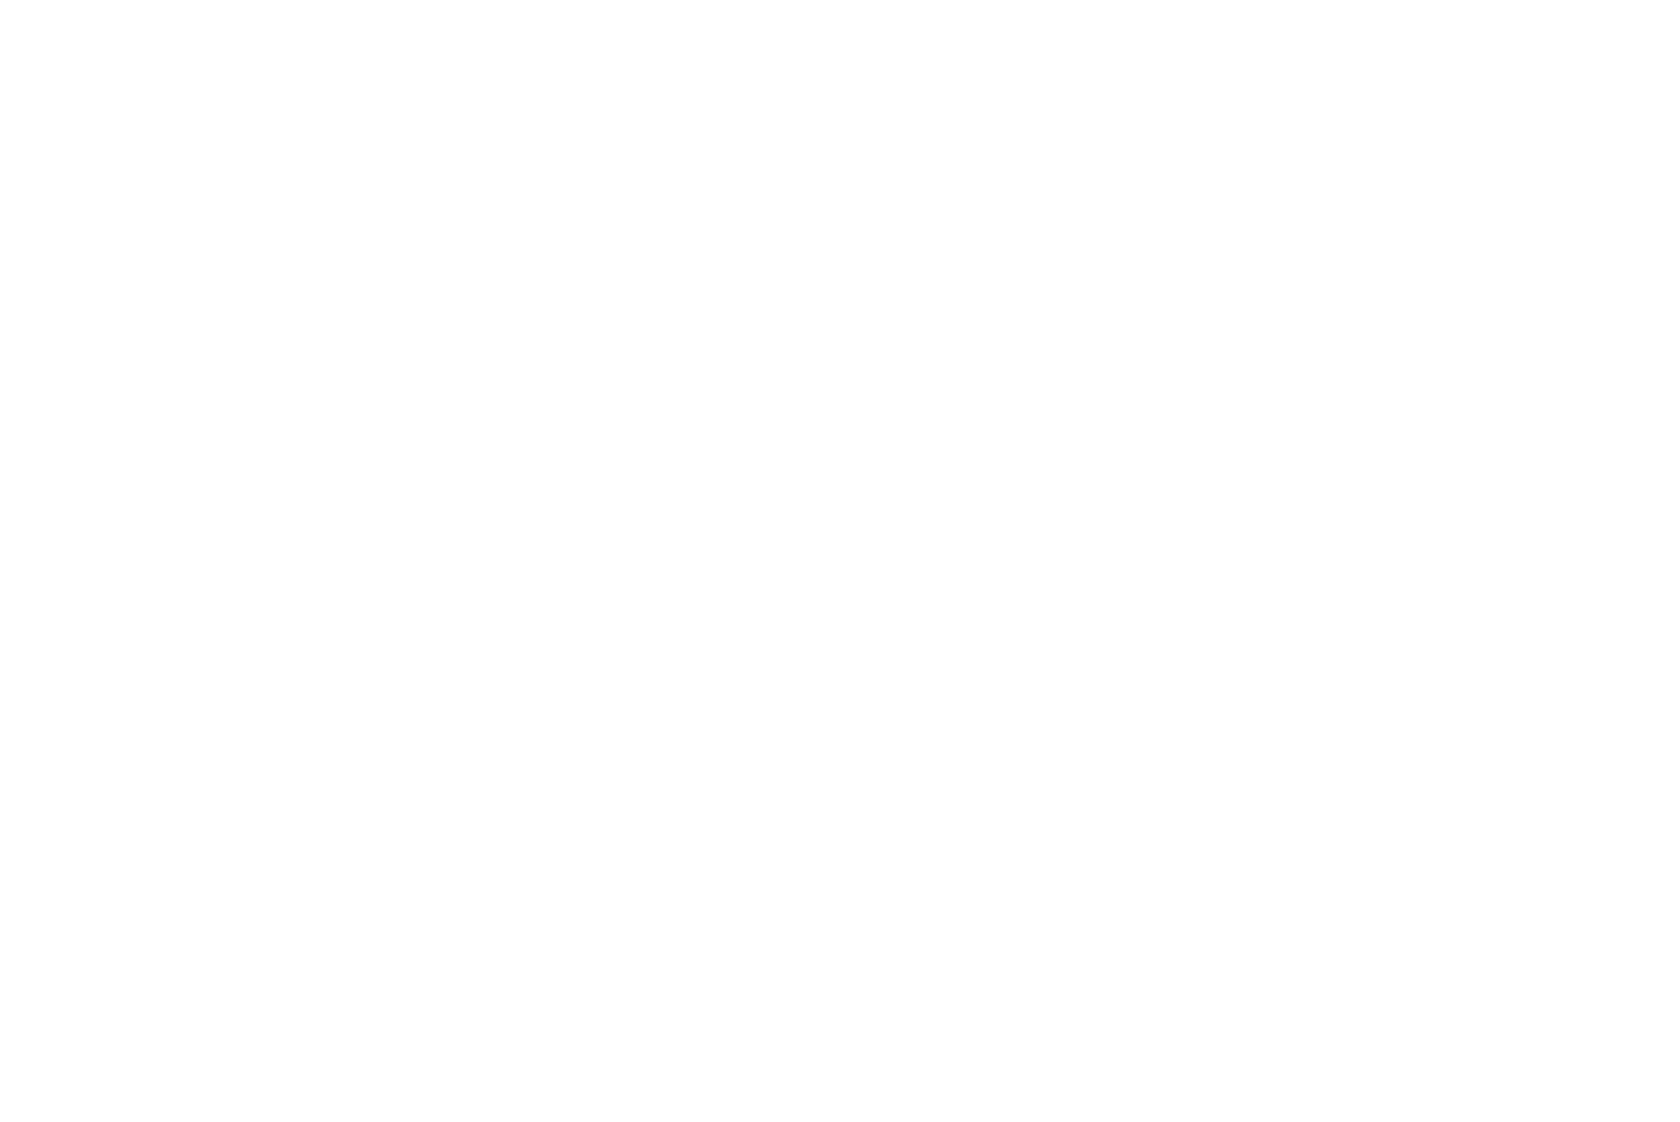 Метель на стоянке ненцев оленеводов-кочевников. Глава семьи рубит дрова. Ненцкие оленегонные лайки в непогоду, прижавшись друг к другу. Ненцы оленеводы-кочевники, Ямал и Полярный Урал. Фото — Машкова Елена фотограф